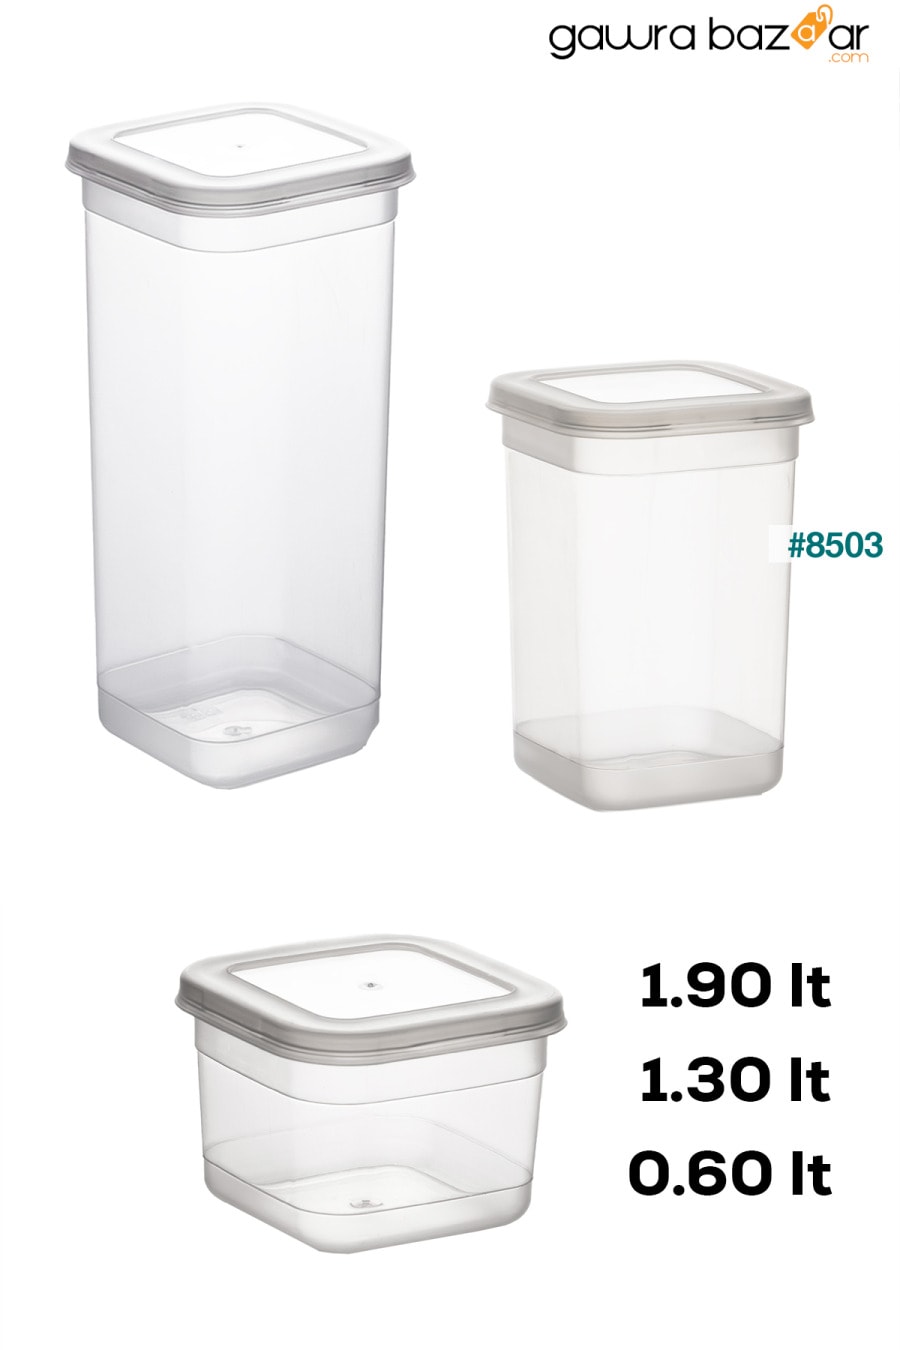 433-4 مجموعة حاويات تخزين التوابل المكونة من 24 قطعة مربعة من المواد الغذائية 8x(0.60+1.30+1.90) لتر شفاف Porsima 2